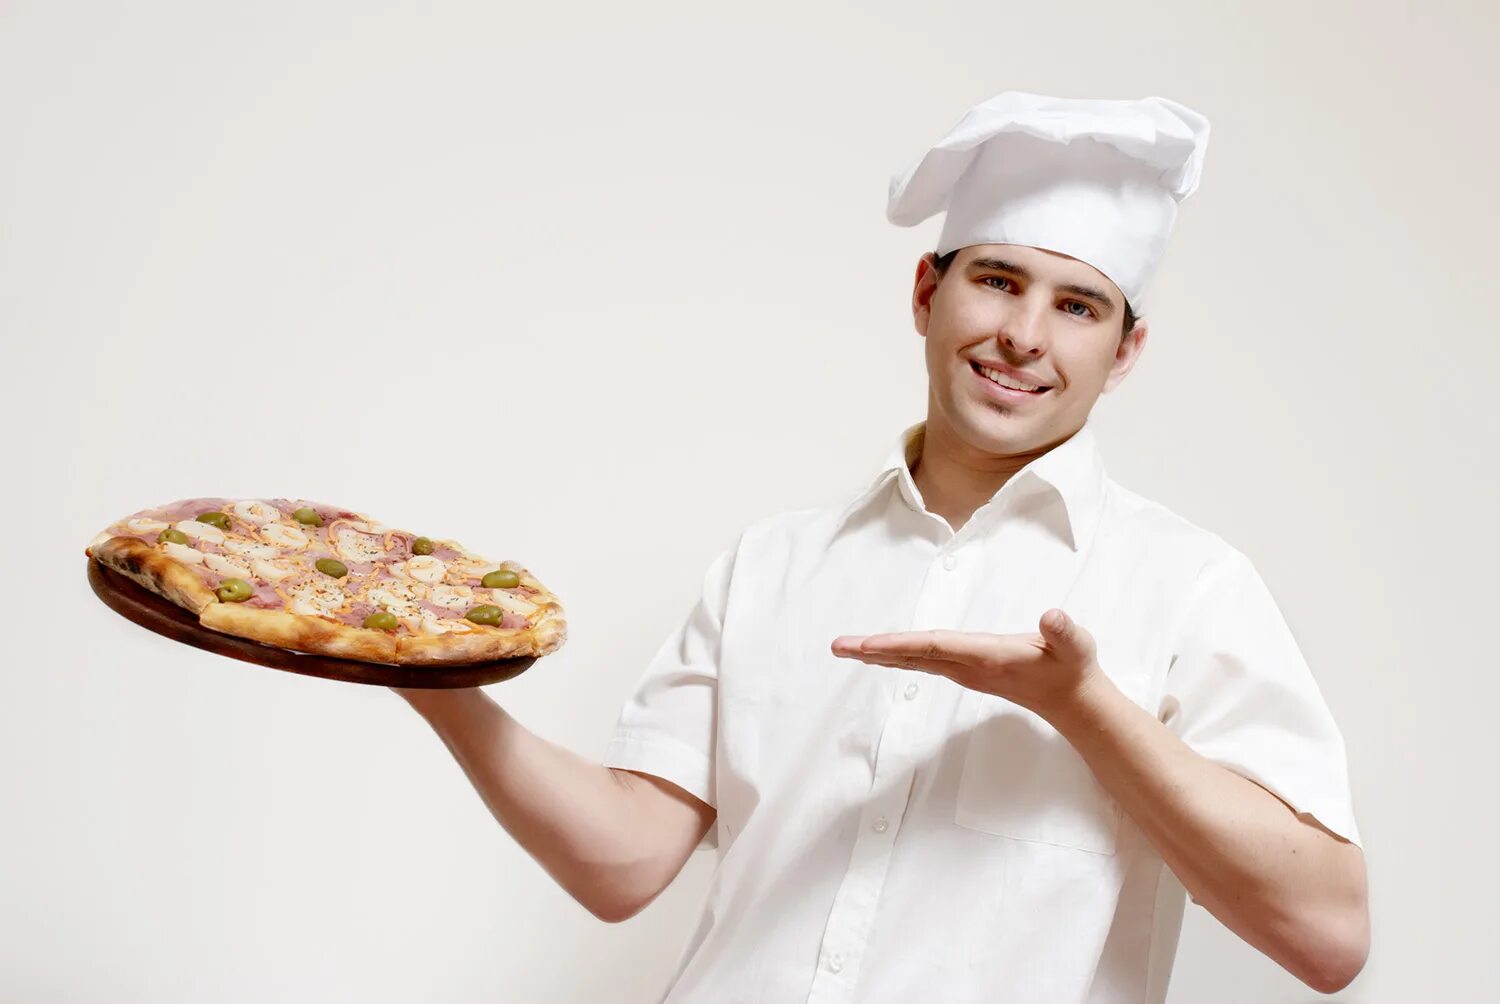 Cook vk. Повар с тарелкой. Повар с пиццей. Повар с блюдом в руках. Повар в пиццерии.